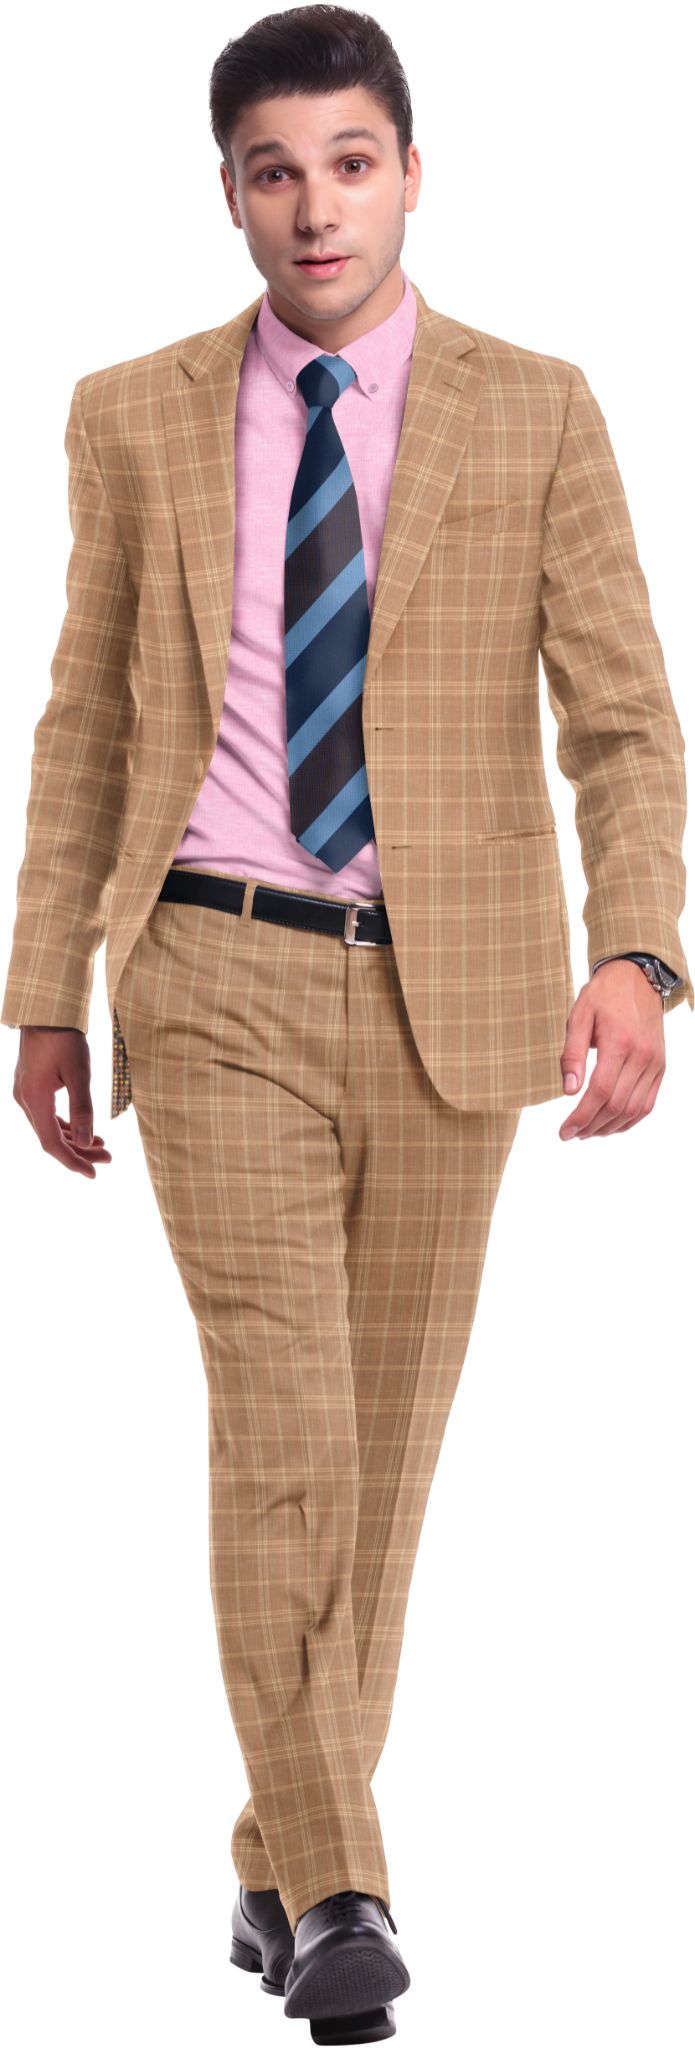 bespoke-suit-vs-tailored-1.jpg